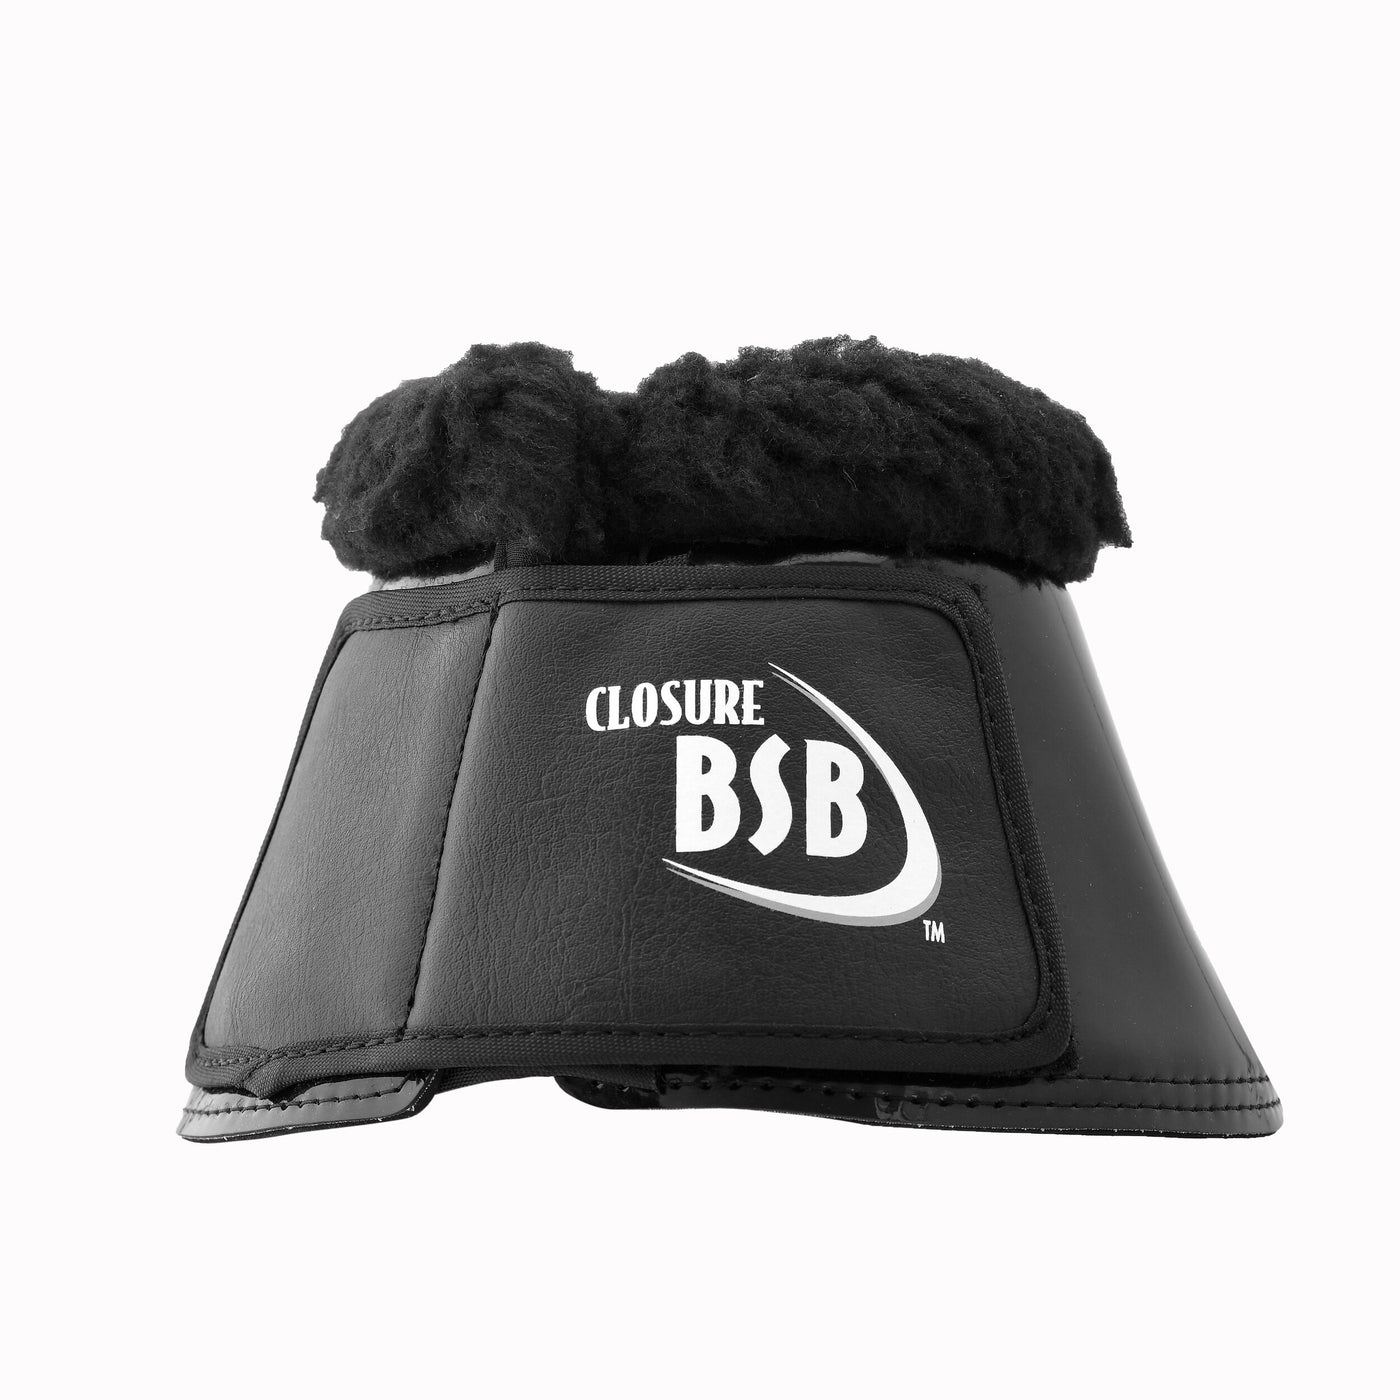 BSB Noir Brillant - Cloches